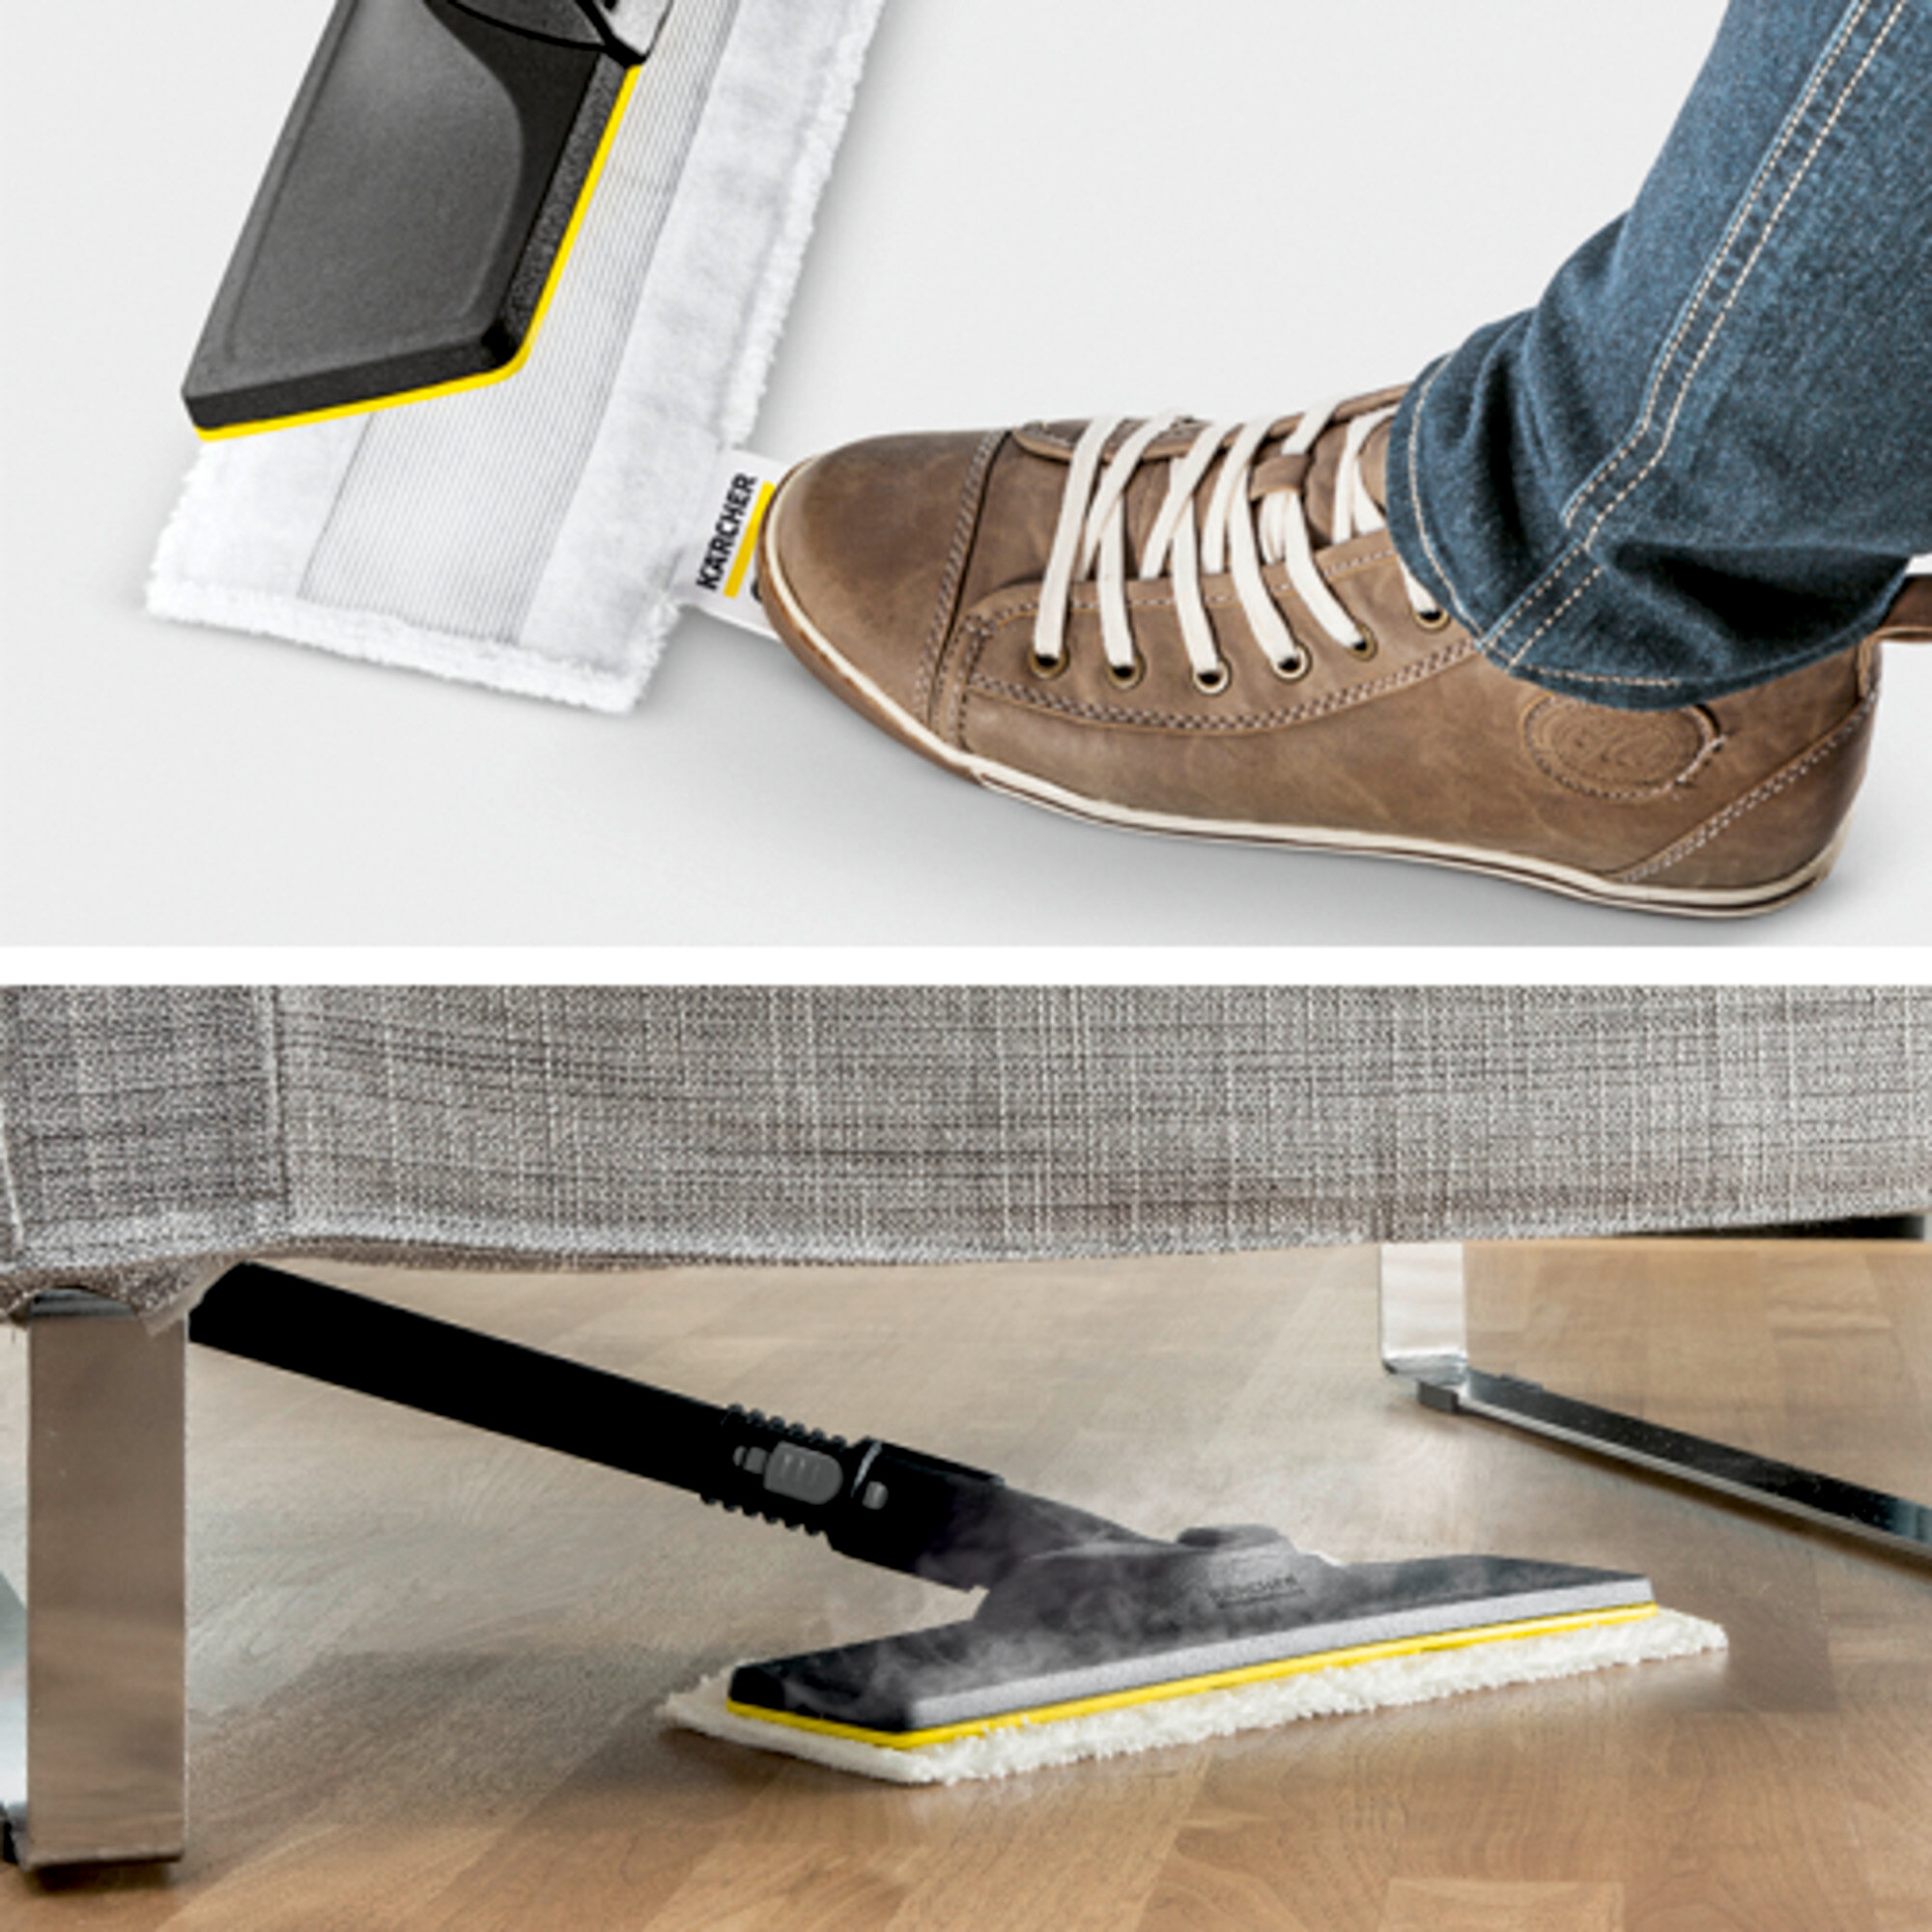  SC 1 EasyFix Premium: Põrandapuhastuskomplekt EasyFix, kuhu kuuluvad painduva ühendusega põrandaotsak ning mugav takjapaelkinnitus põrandalapi jaoks.